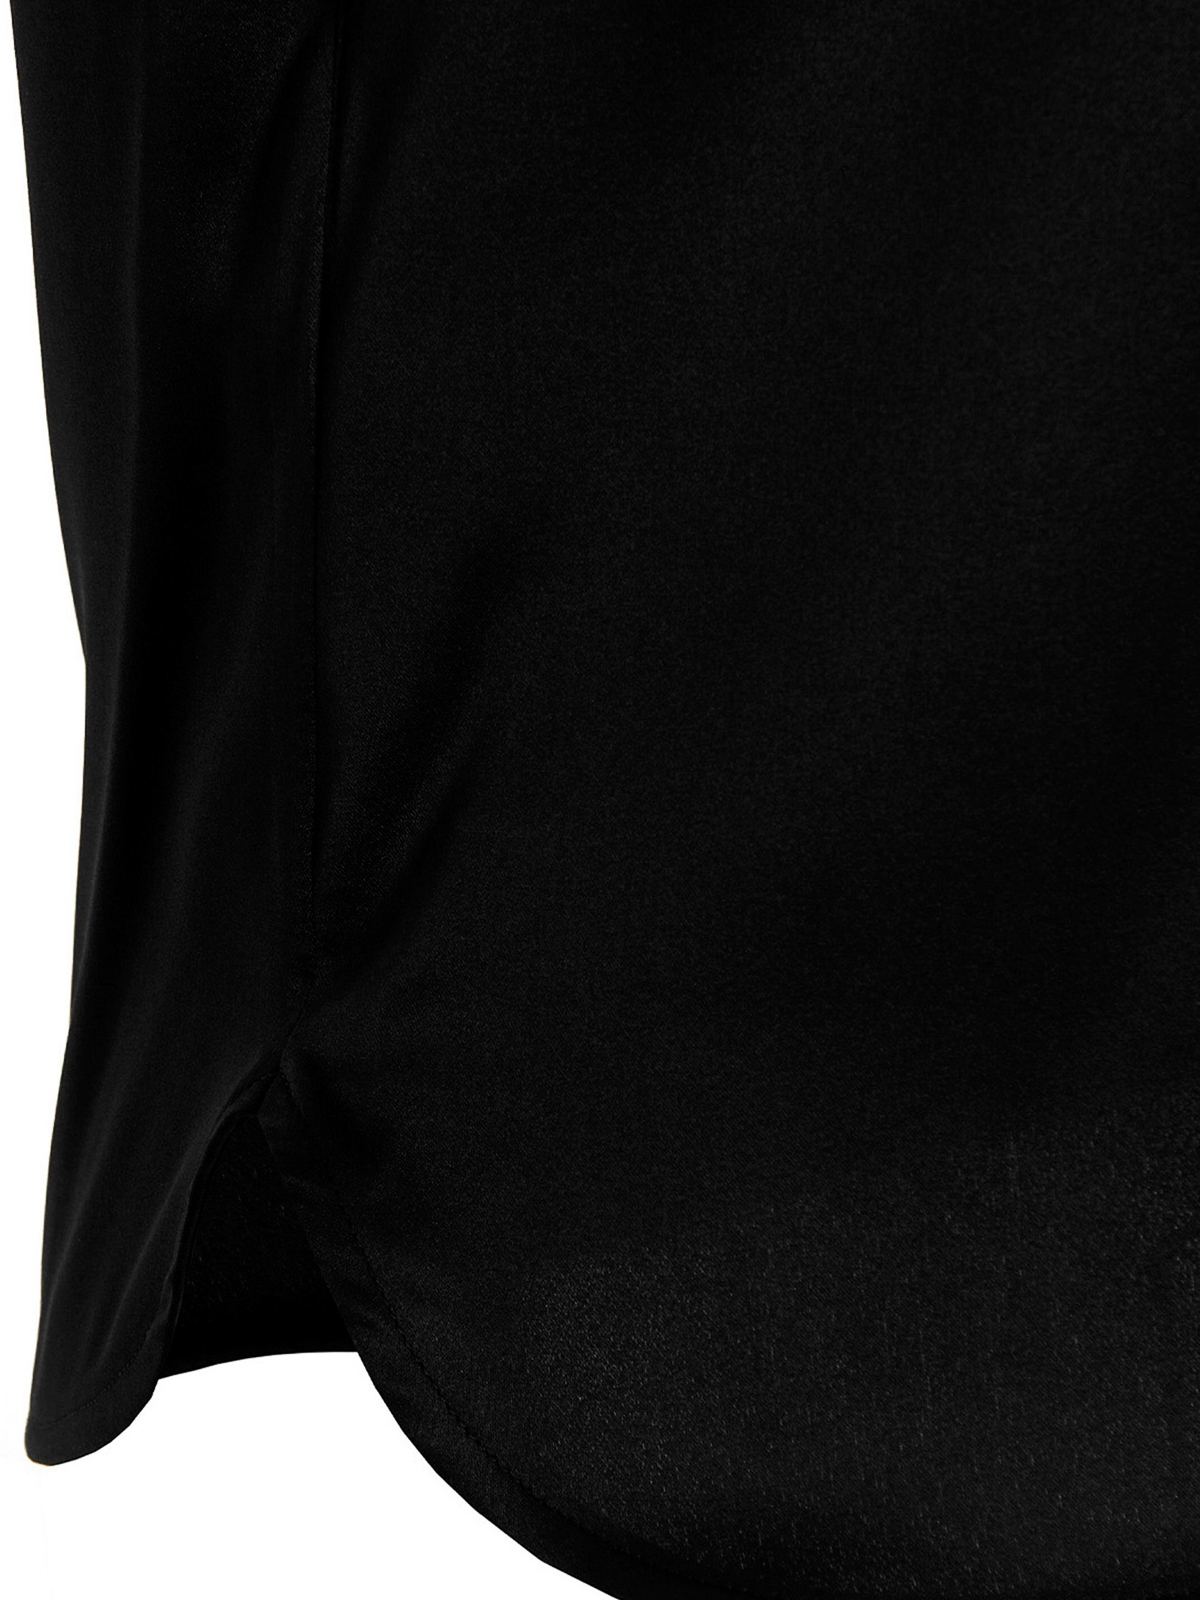 Shop Pinko Camisa - Negro In Black